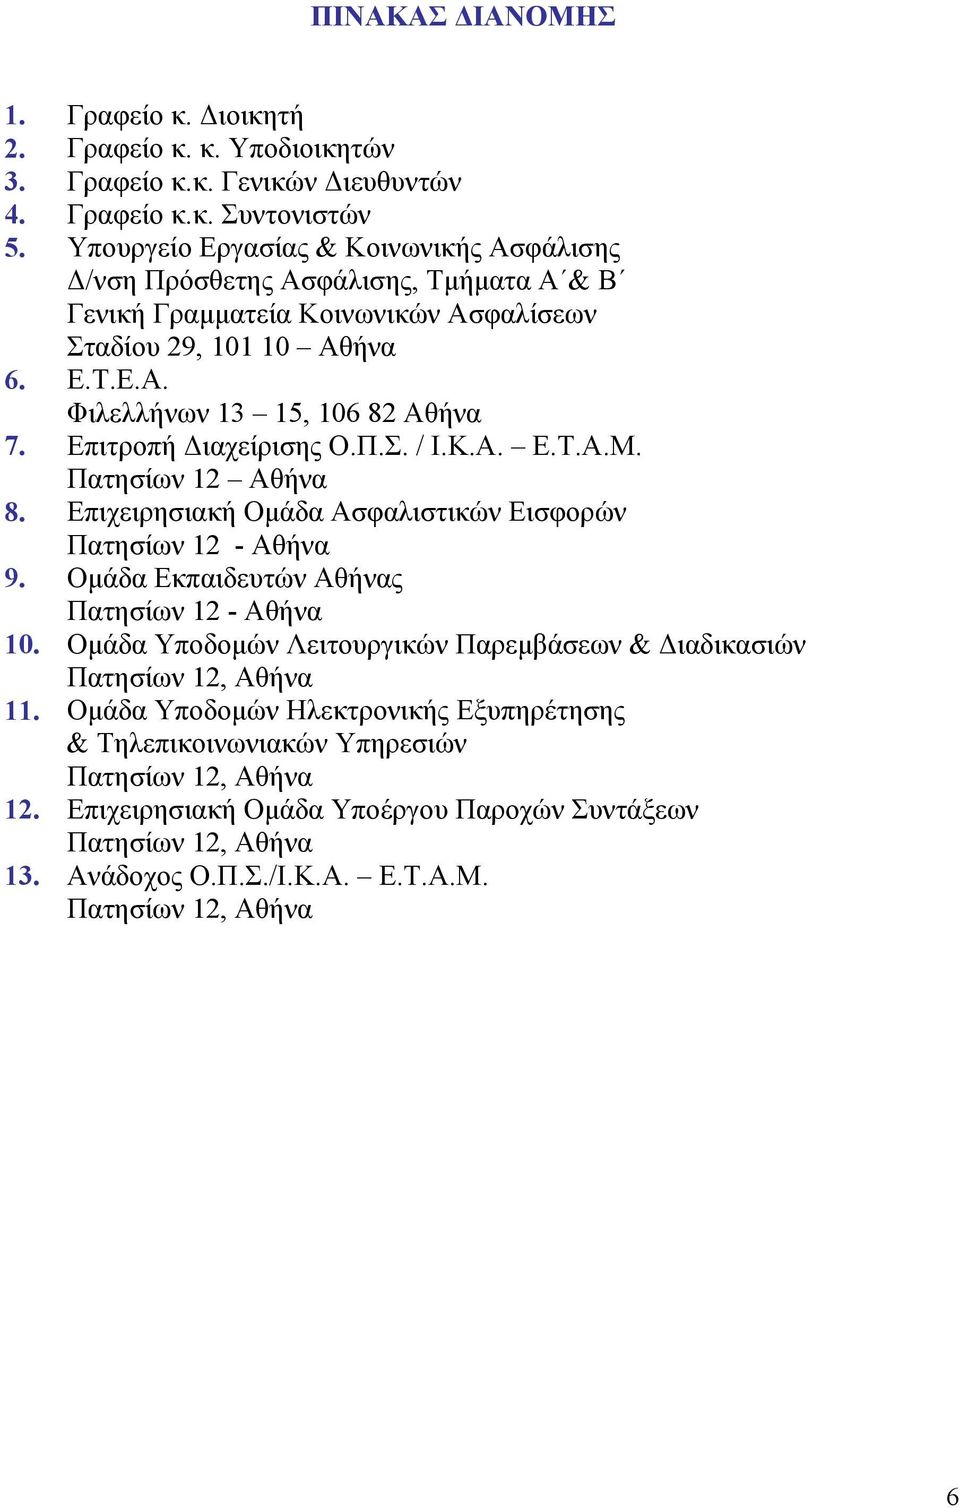 Επιτροπή Διαχείρισης Ο.Π.Σ. / Ι.Κ.Α. Ε.Τ.Α.Μ. Πατησίων 12 Αθήνα 8. Επιχειρησιακή Ομάδα Ασφαλιστικών Εισφορών Πατησίων 12 - Αθήνα 9.